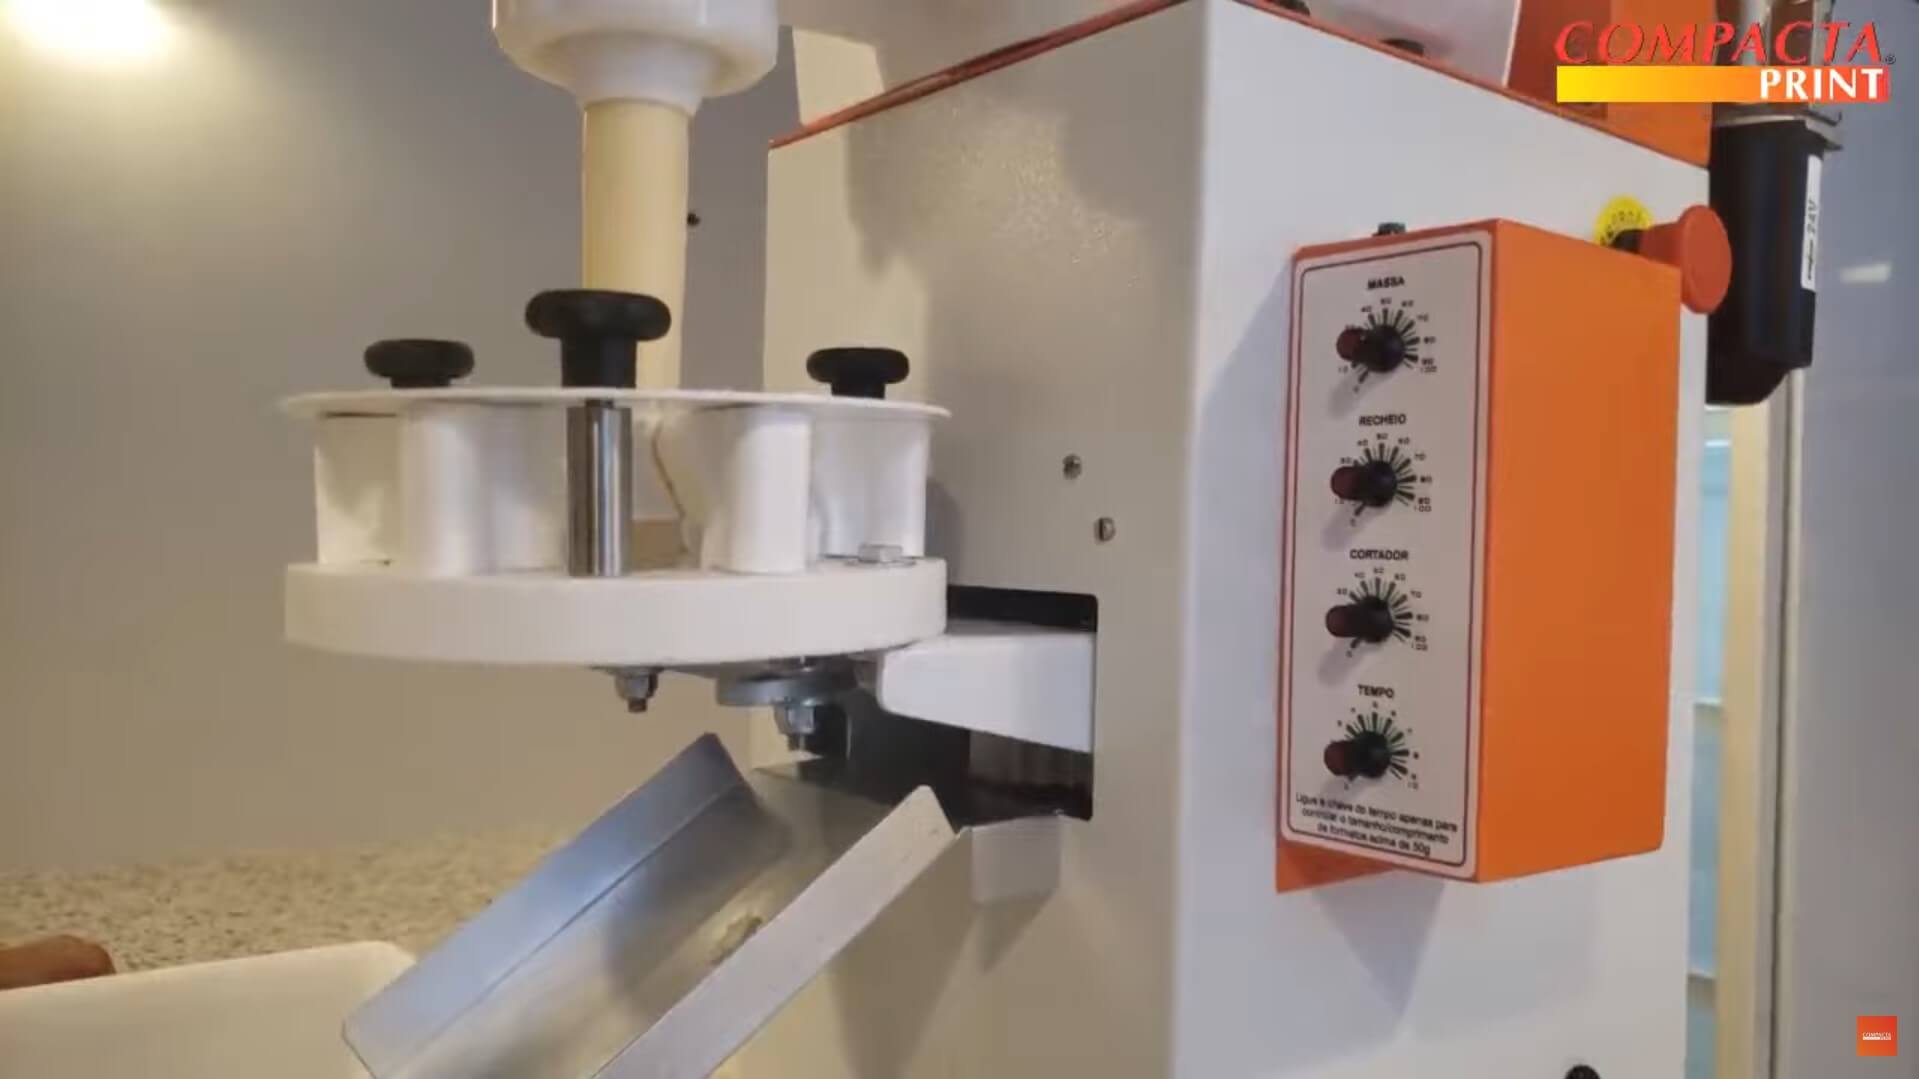 Máquina de Salgados Compacta Print